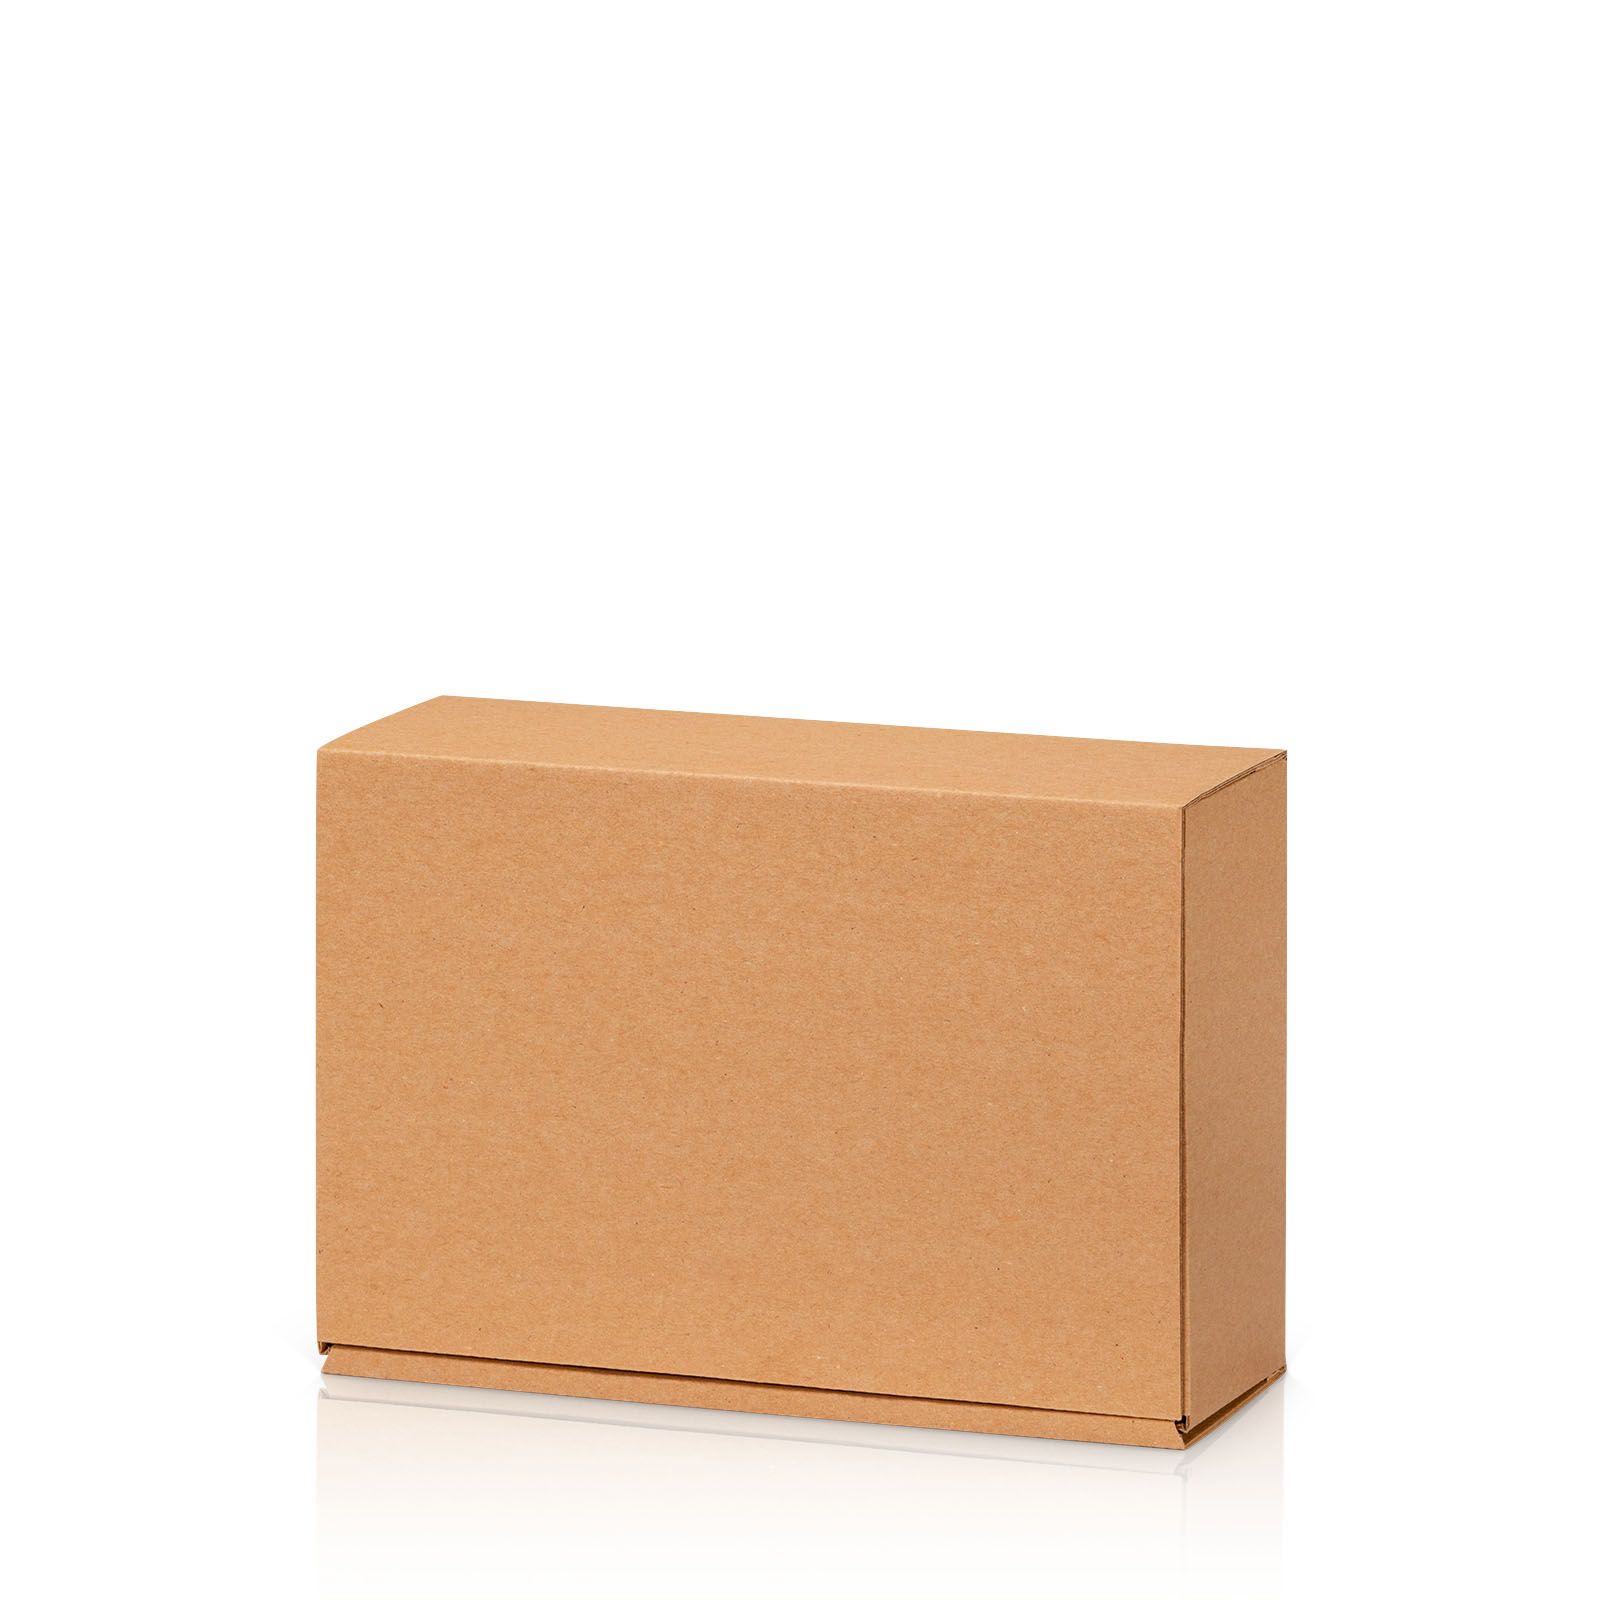 Geschenkbox S-220x150x75natura glatte Oberfläche Kraftpapier